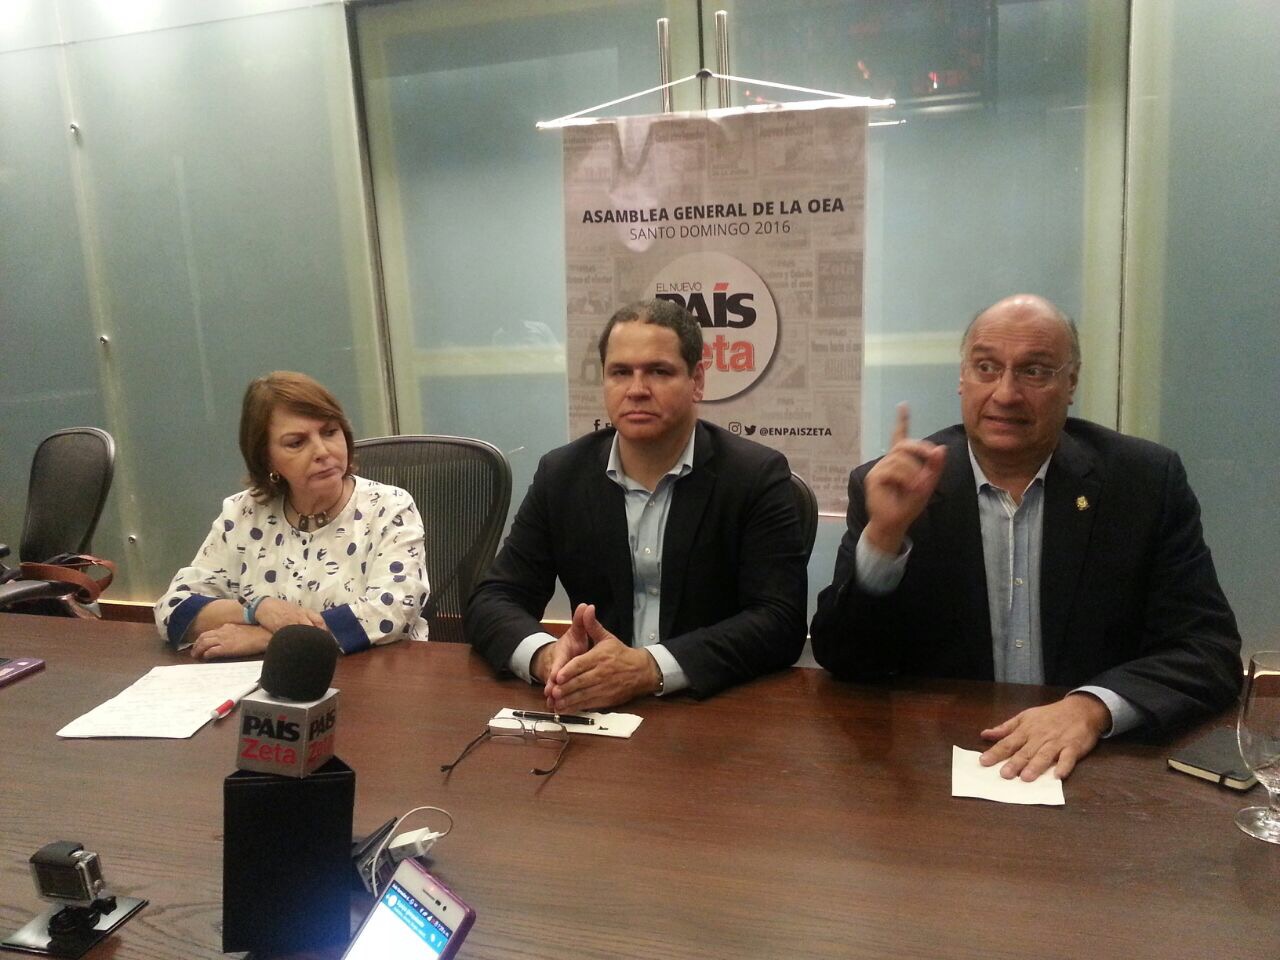 Luis Florido: Maduro aumentó represión en Venezuela, es urgente aplicar la Carta Democrática